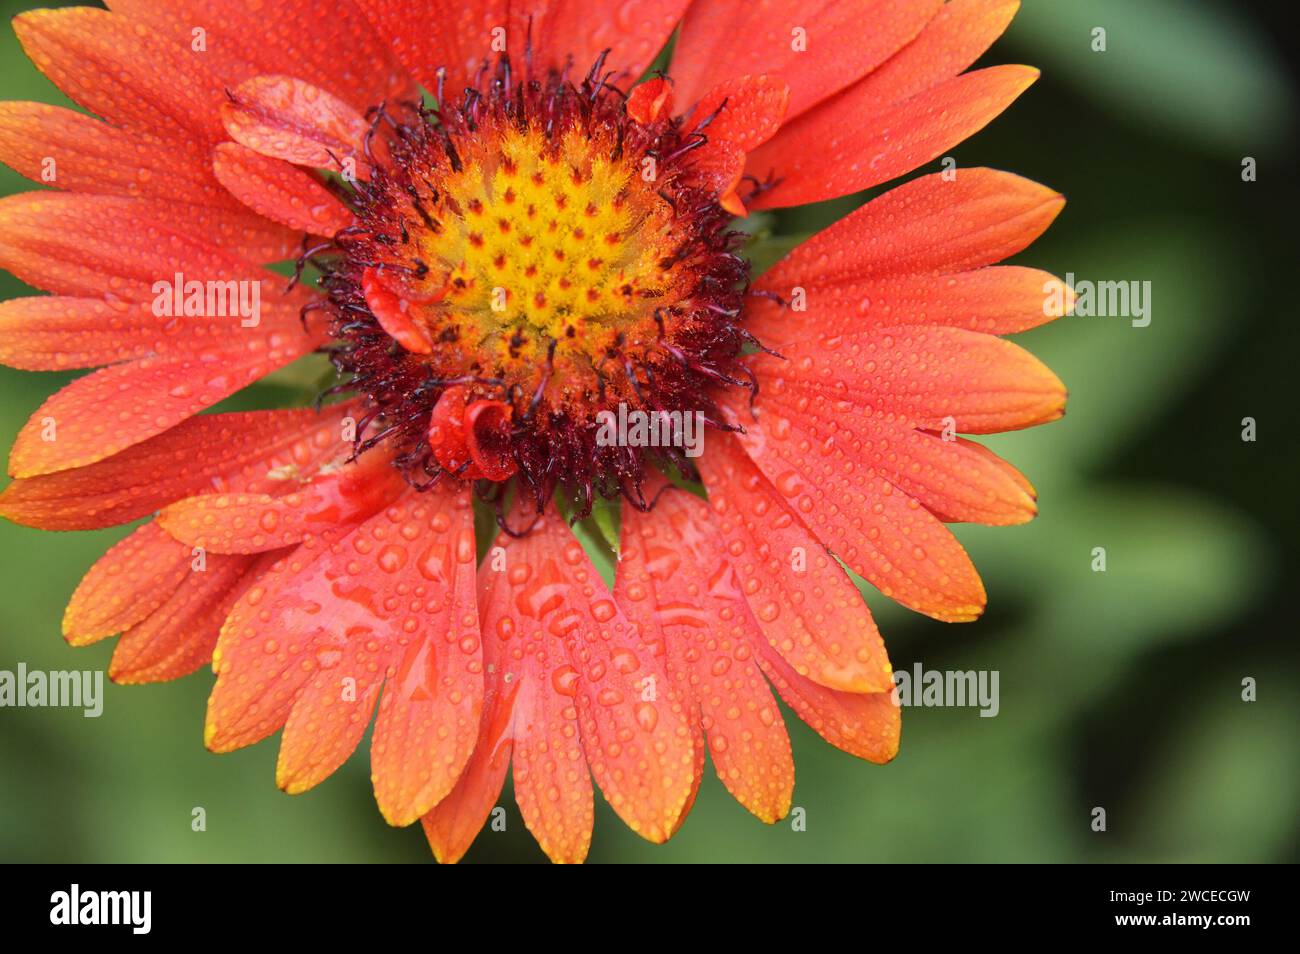 Red blanket flower (Gaillardia burgundy), macro image Stock Photo